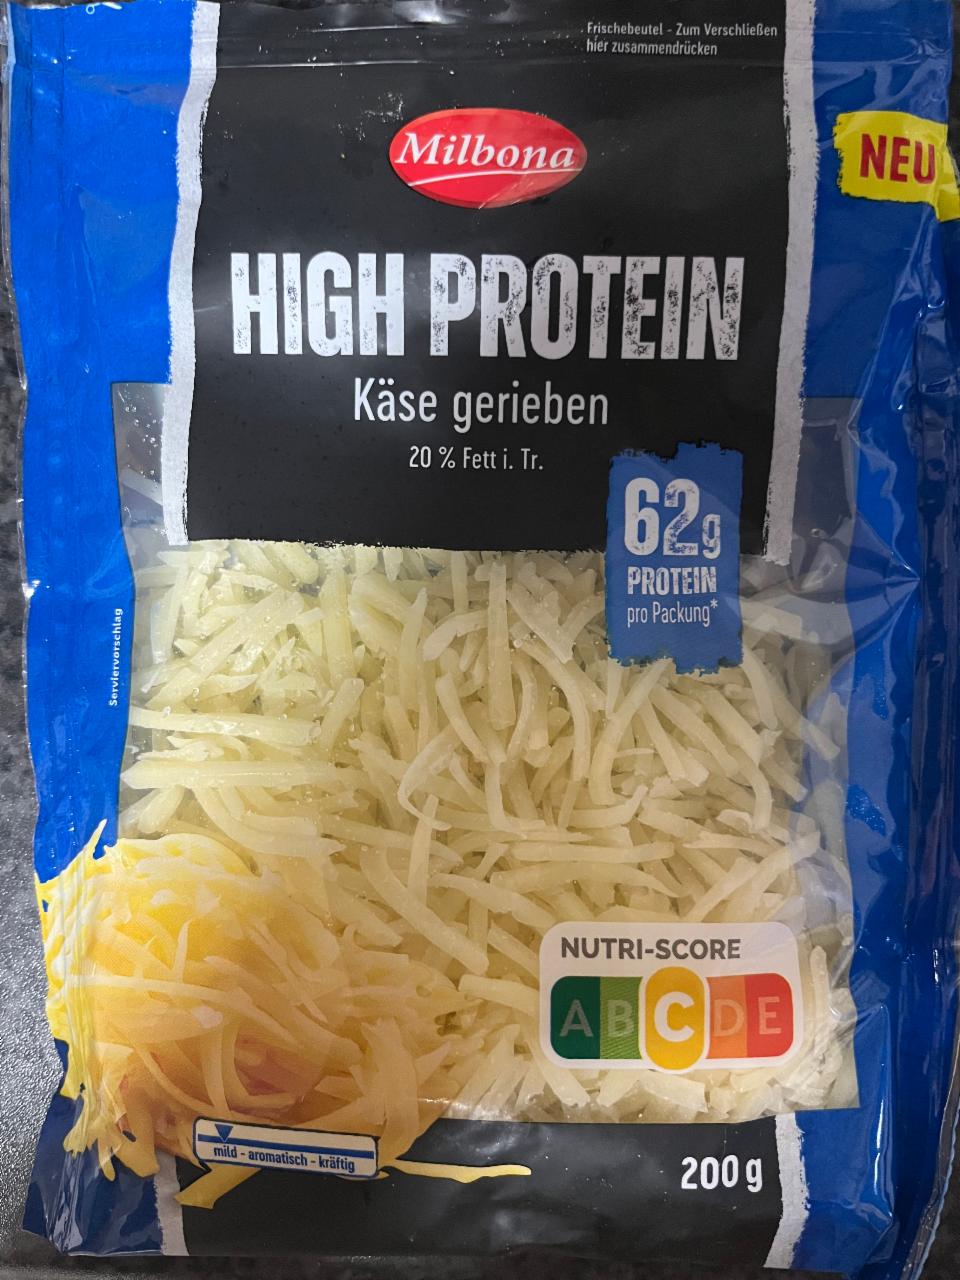 Fotografie - High Protein Käse gerieben Milbona